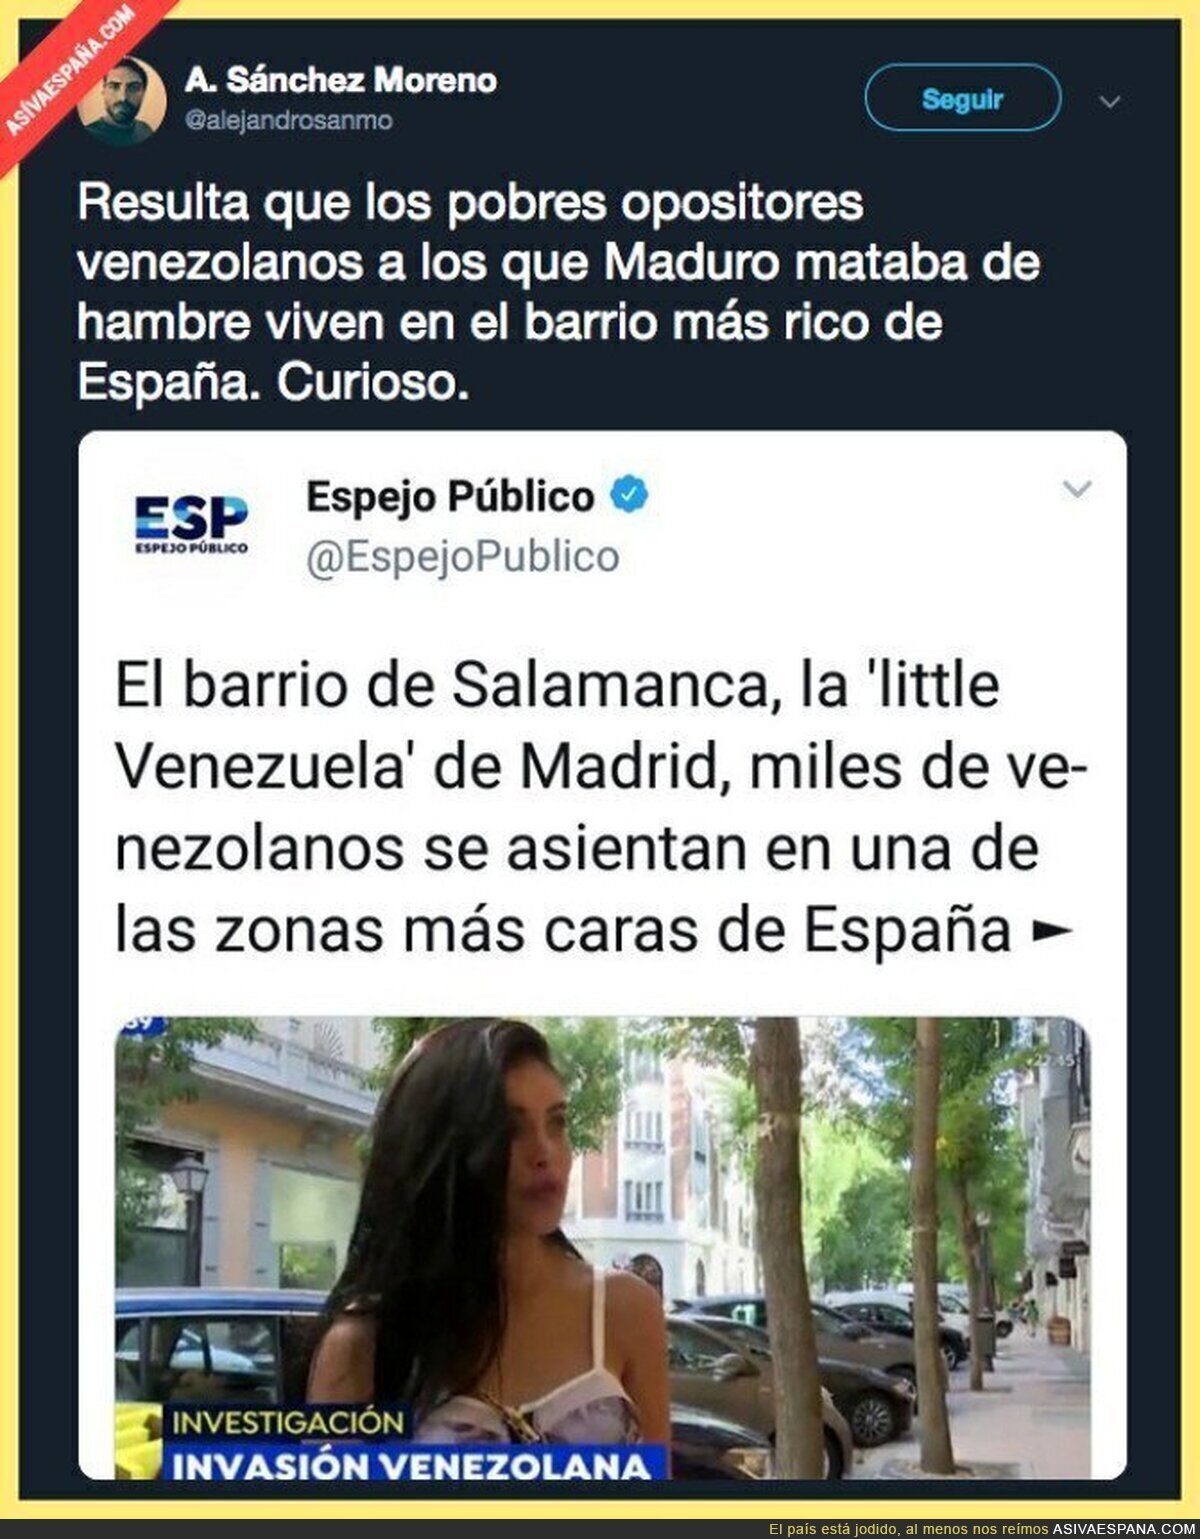 Que mal viven los venezolanos, eh